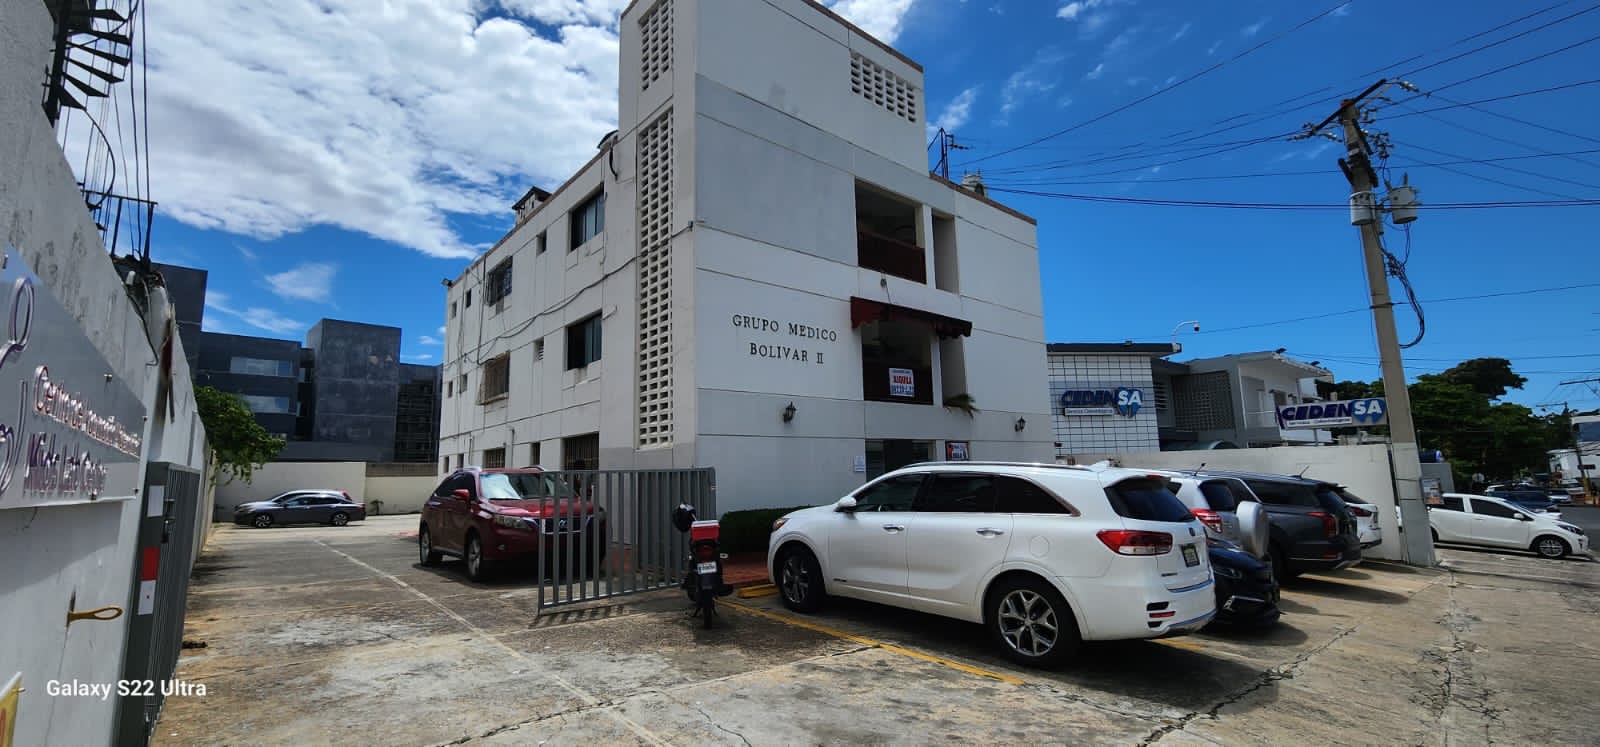 oficinas y locales comerciales - Local Comercial en alquiler en el Grupo Médico Bolivar II 2